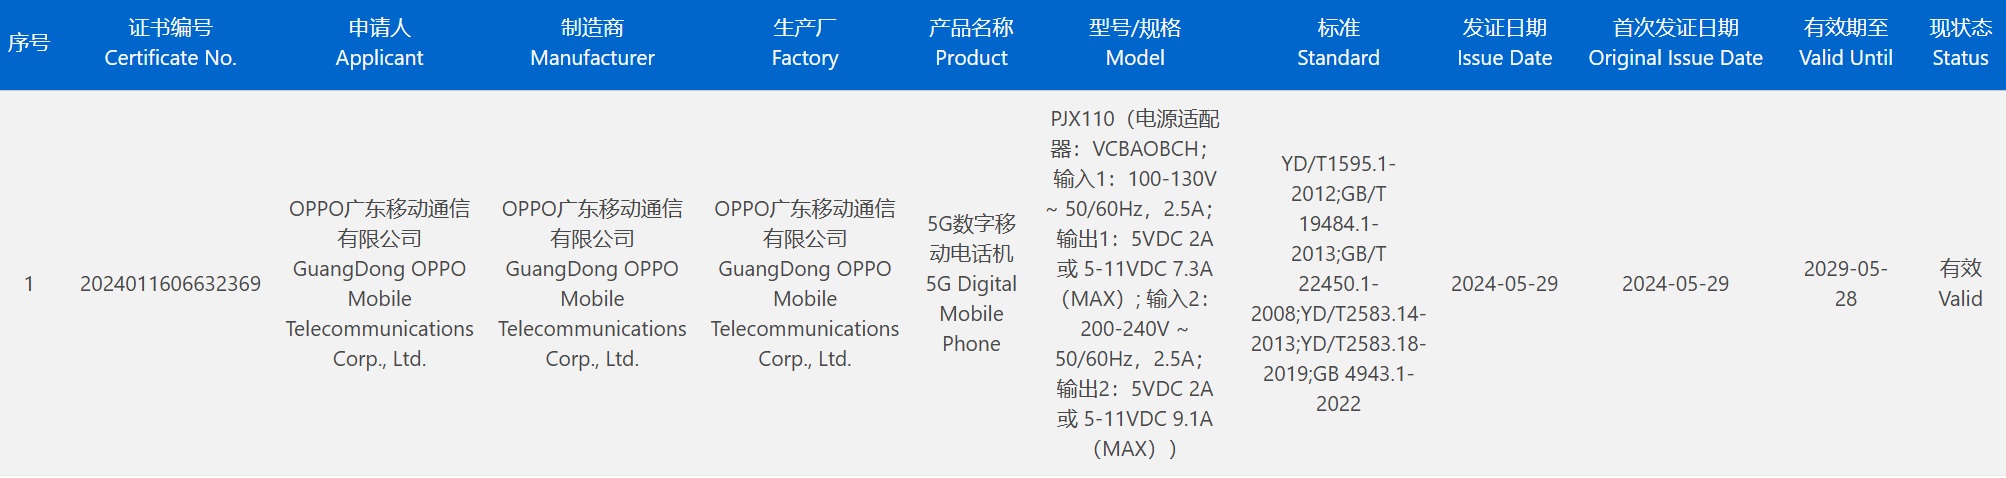 OnePlus Ace 3 Pro прошел сертификацию 3C